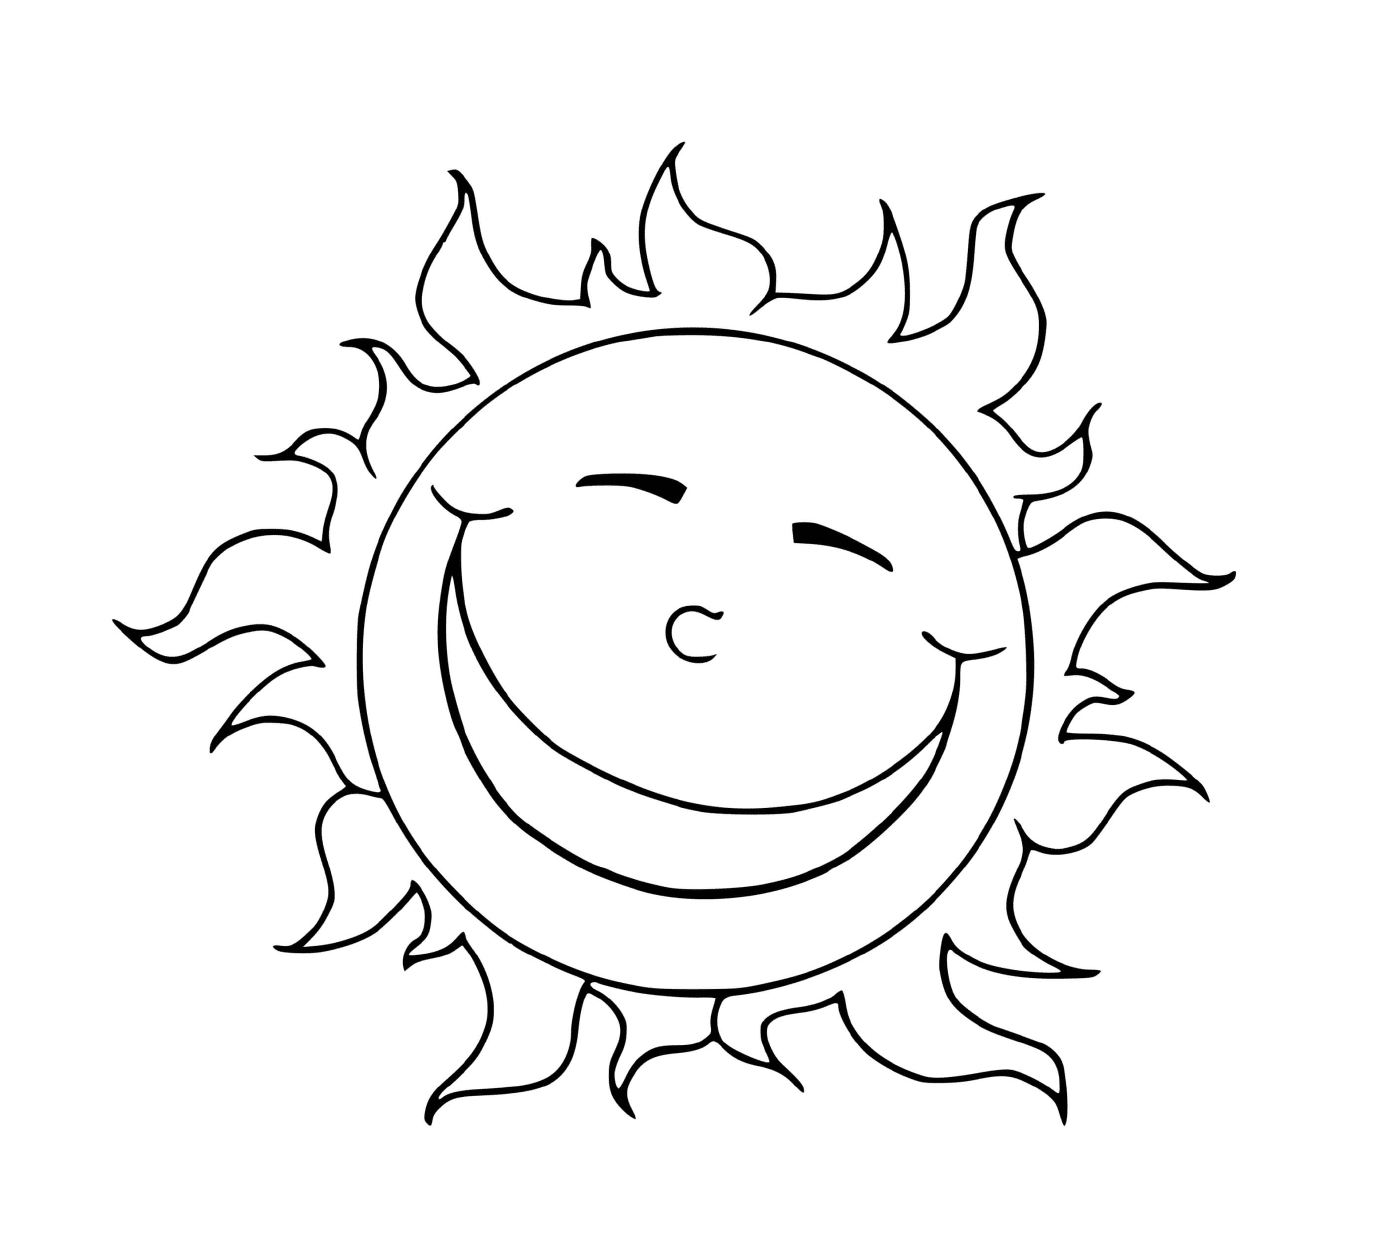  Radiante sol sonriente 